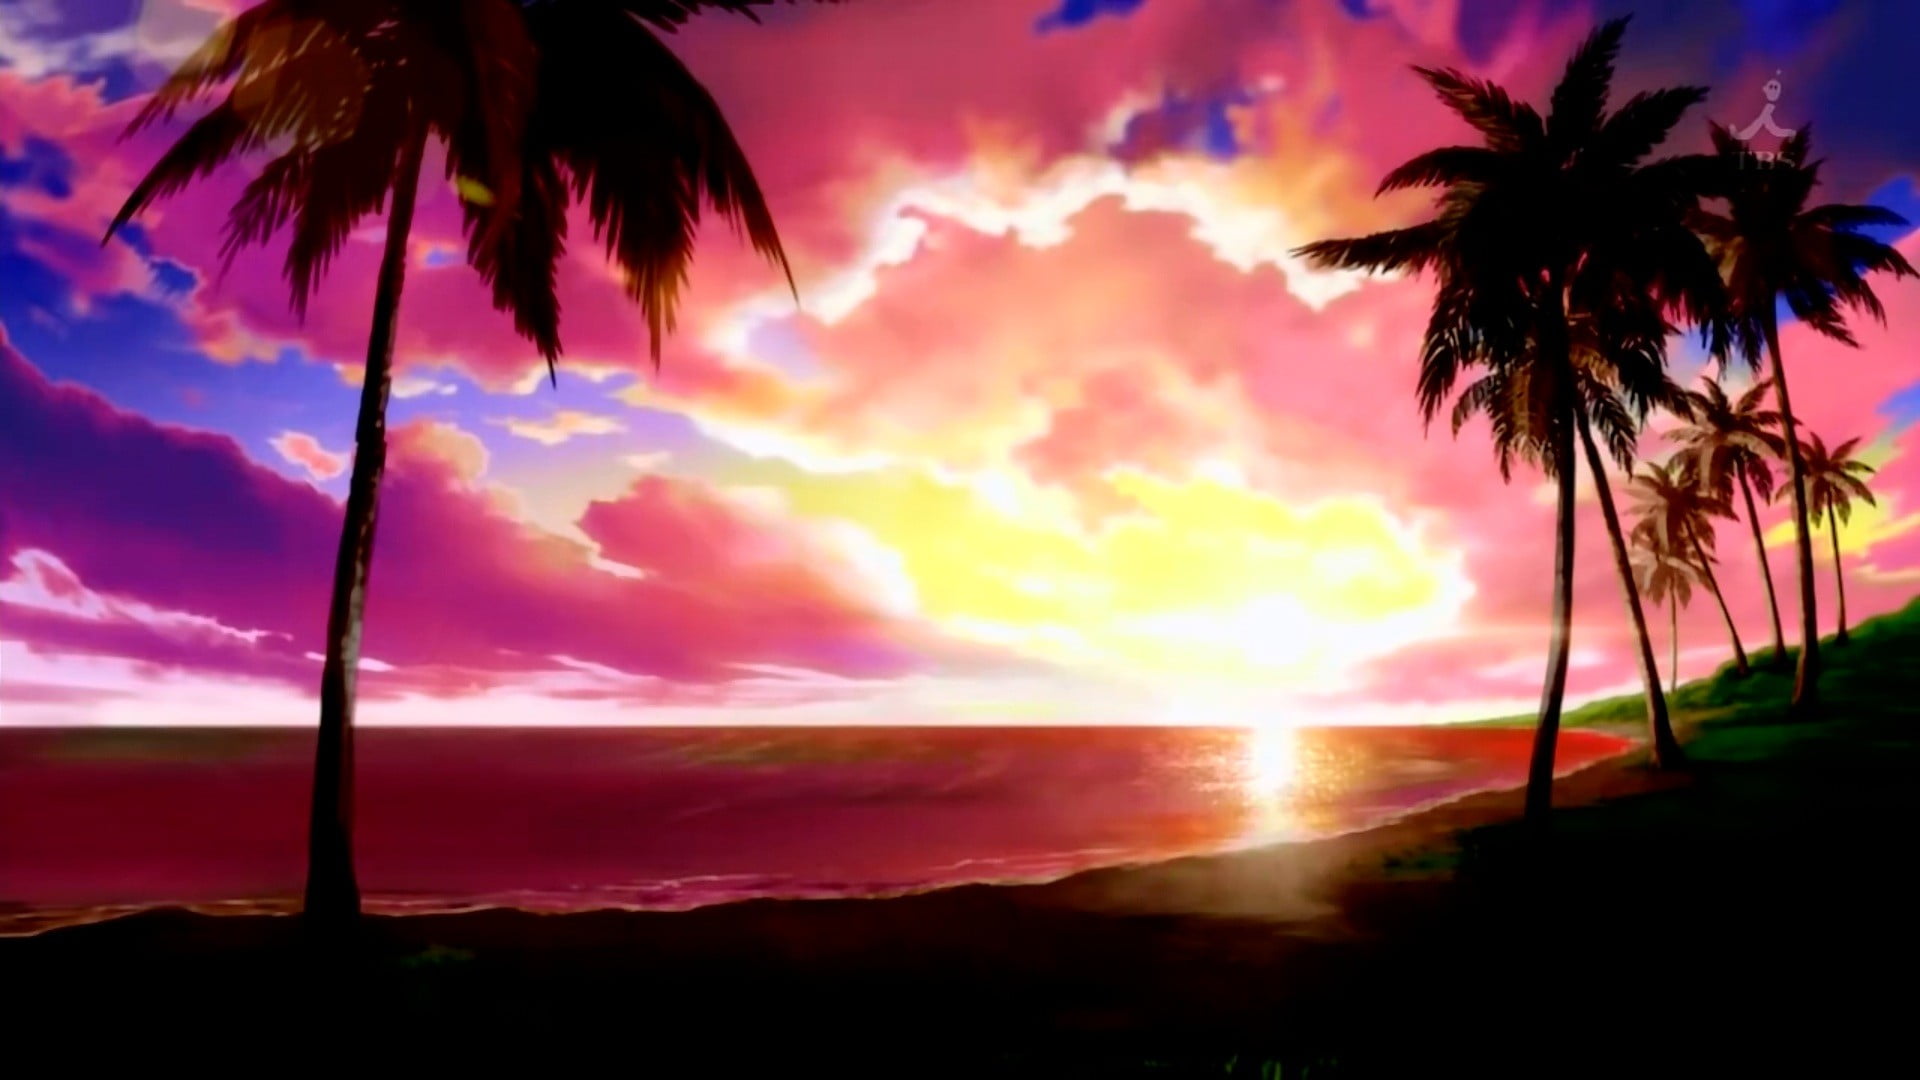 Anime Sunset (4k) Wallpaper by CYBERxYT on DeviantArt